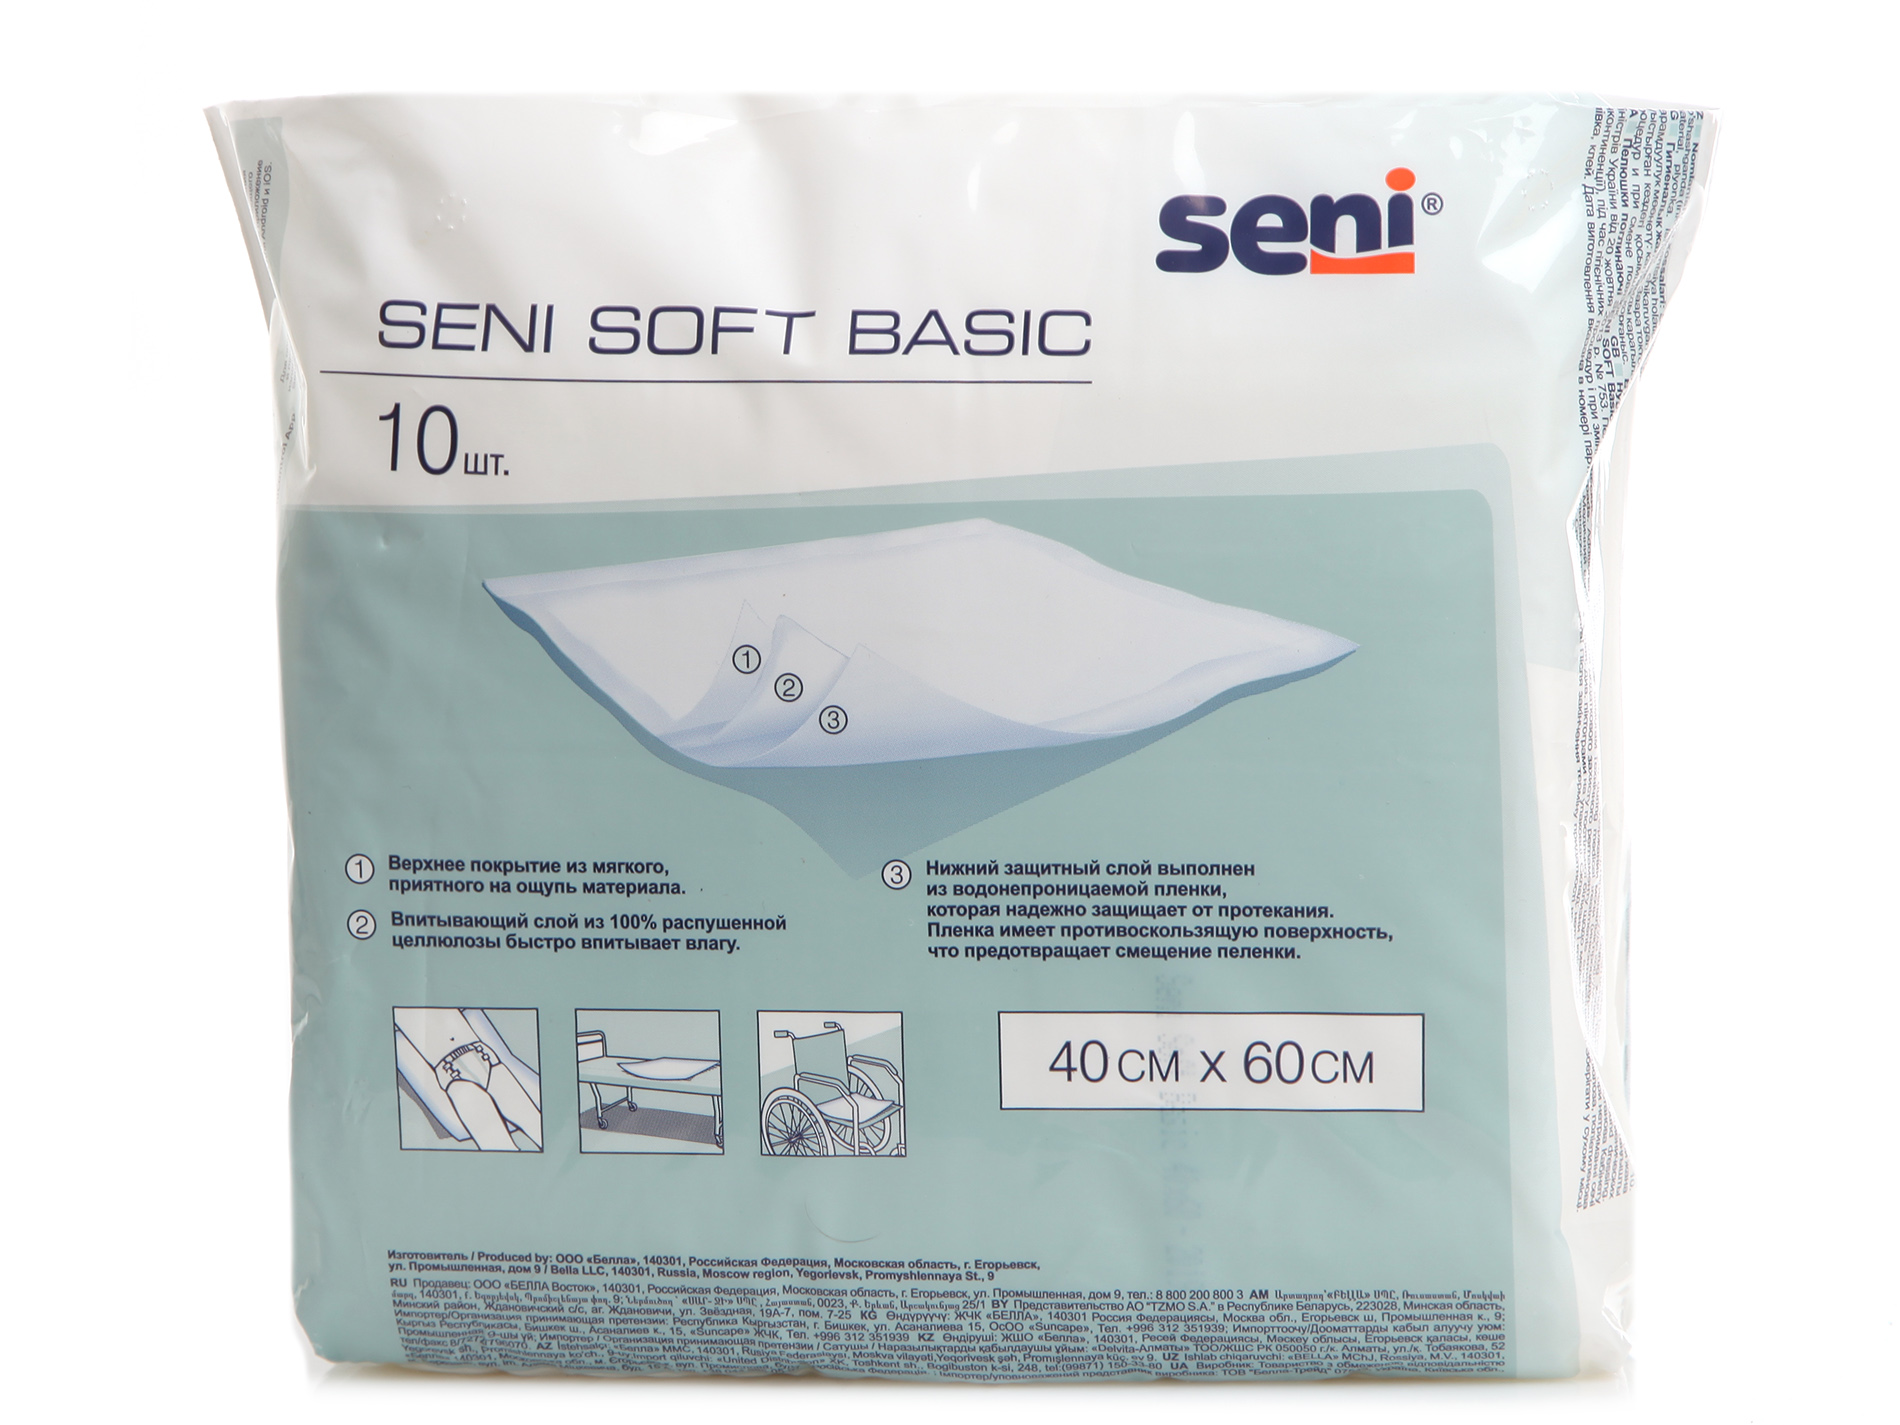 Пеленки одноразовые впитывающие для лежачих. Пеленки Seni Basic Soft 90x60 см. Seni Soft Basic 40 x 60. Сени софт Бейсик пеленки 10 шт.